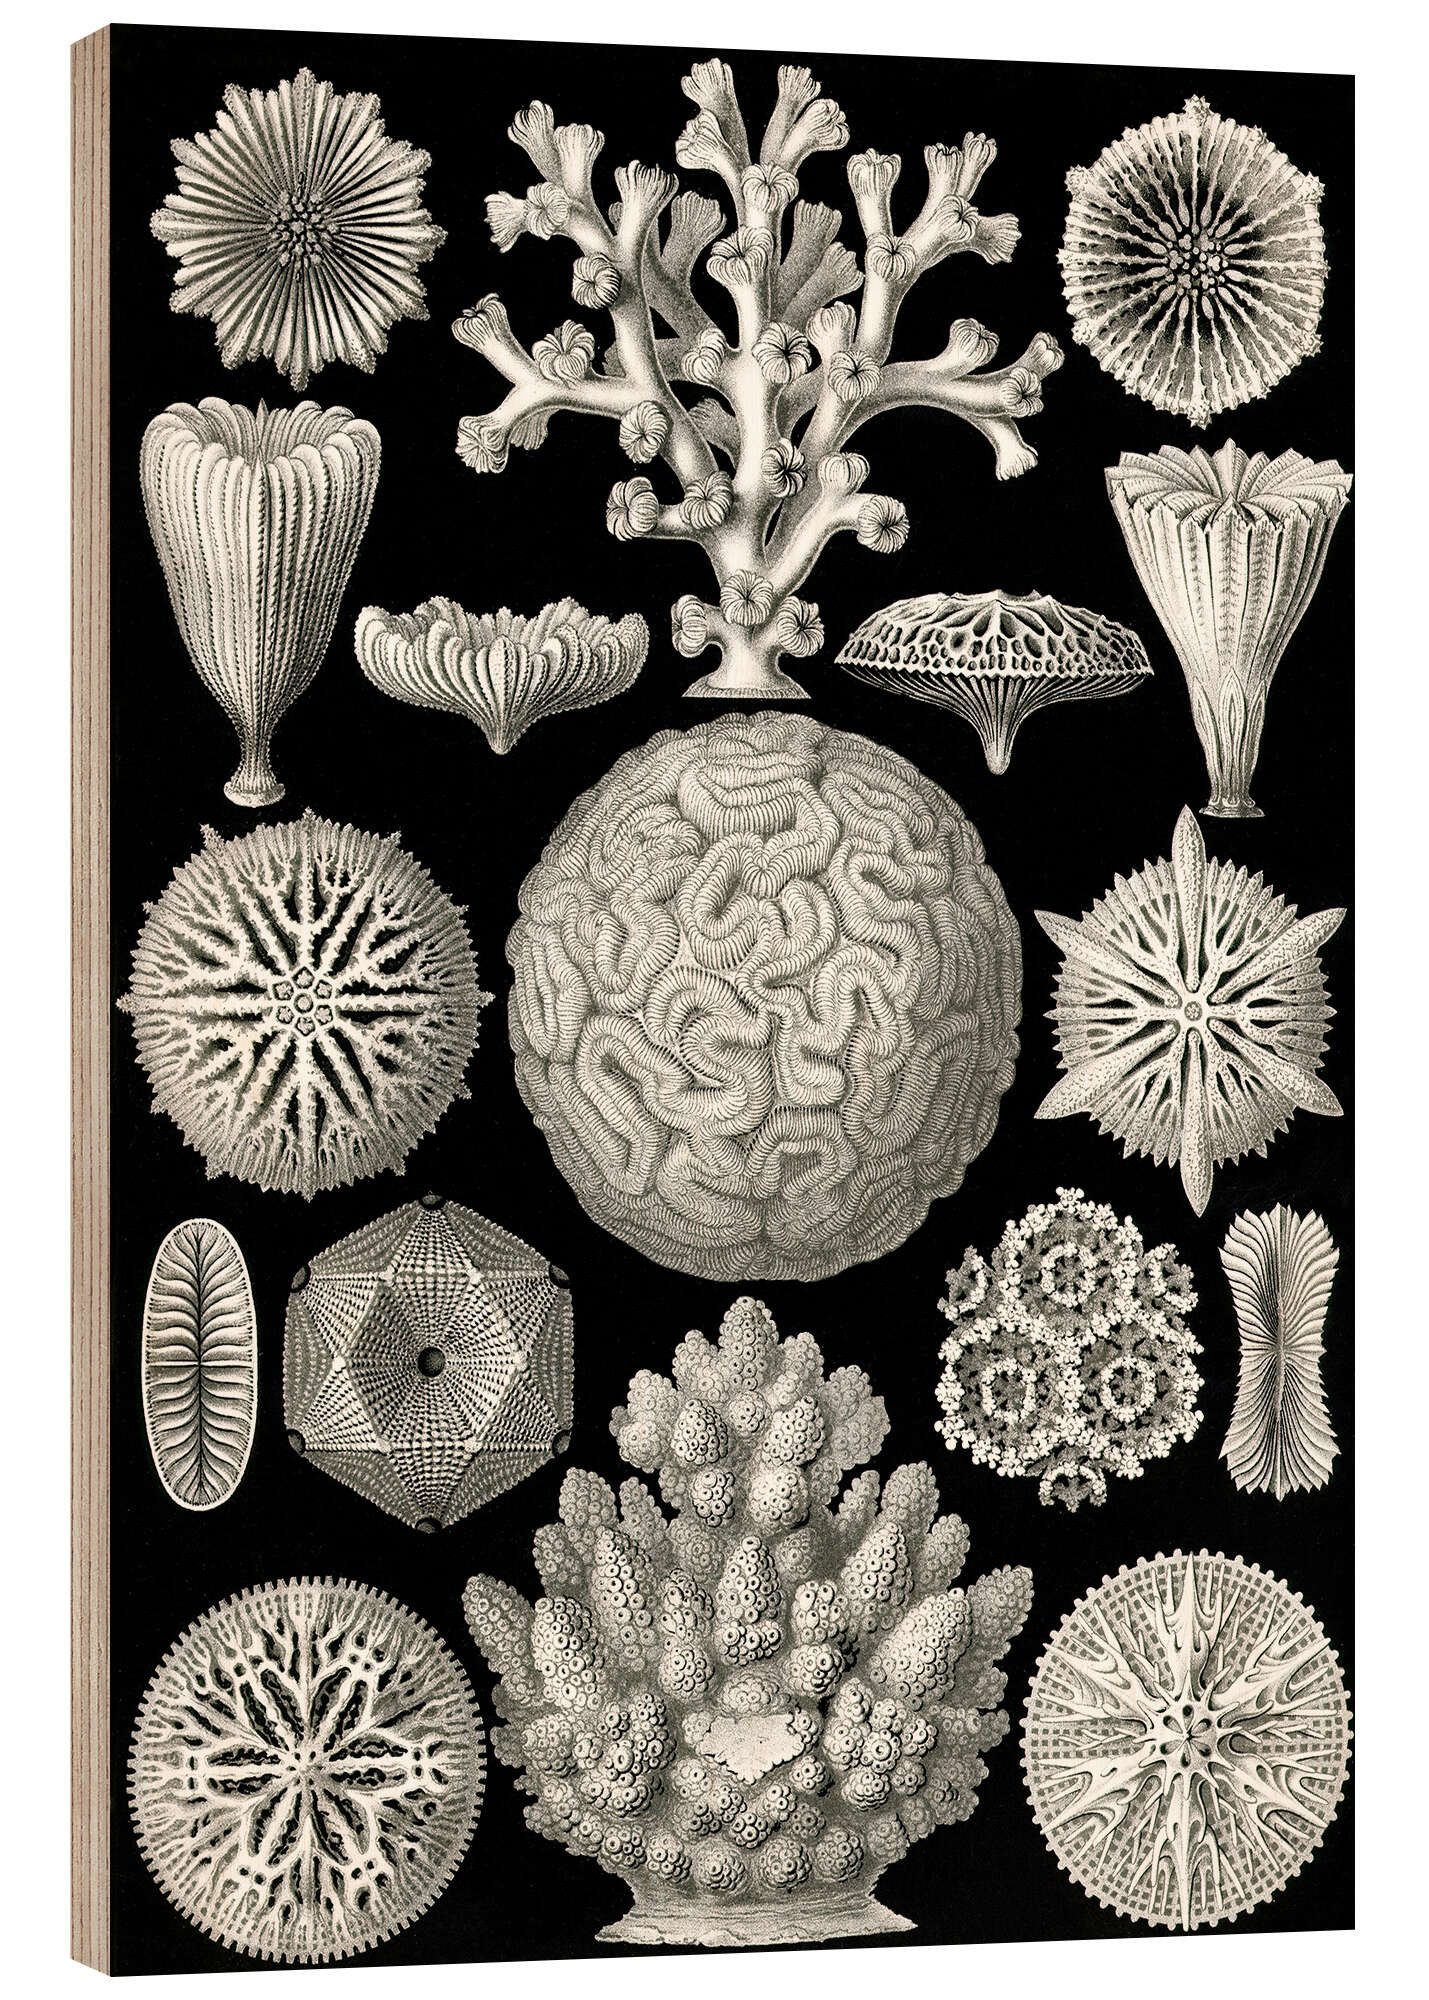 Posterlounge Holzbild Ernst Haeckel, Sechsstrahlige Blumentiere, Hexacorallia (Kunstformen der Natur, 1899), Malerei